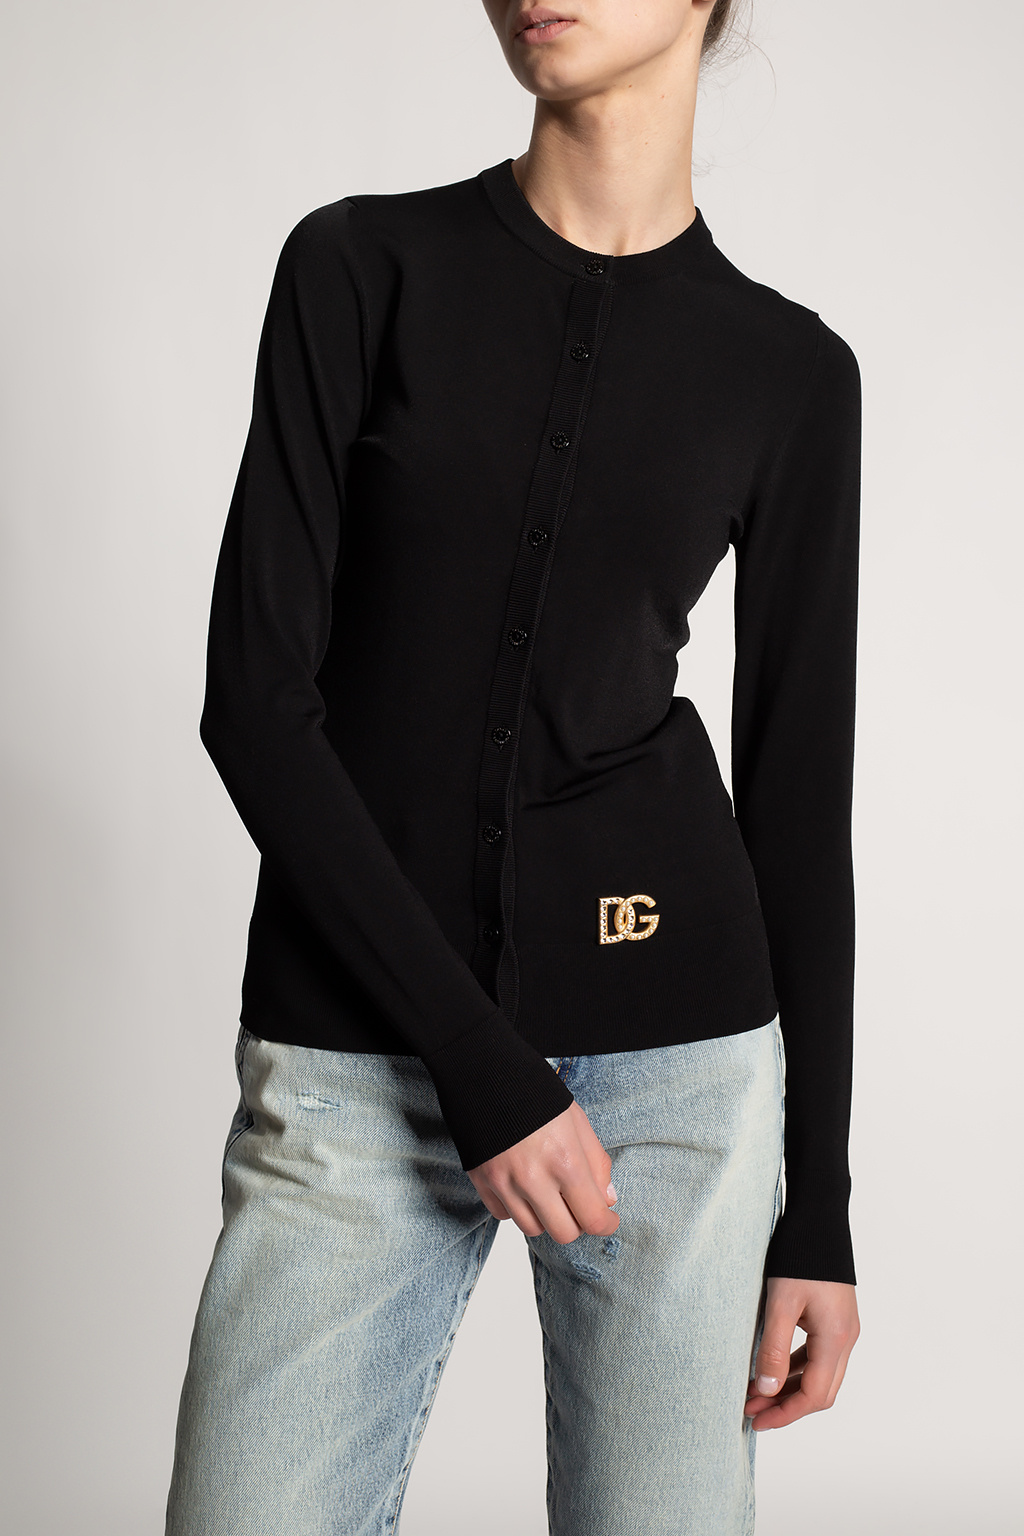 Dolce & Gabbana Cardigan with logo | Women's Clothing | IetpShops